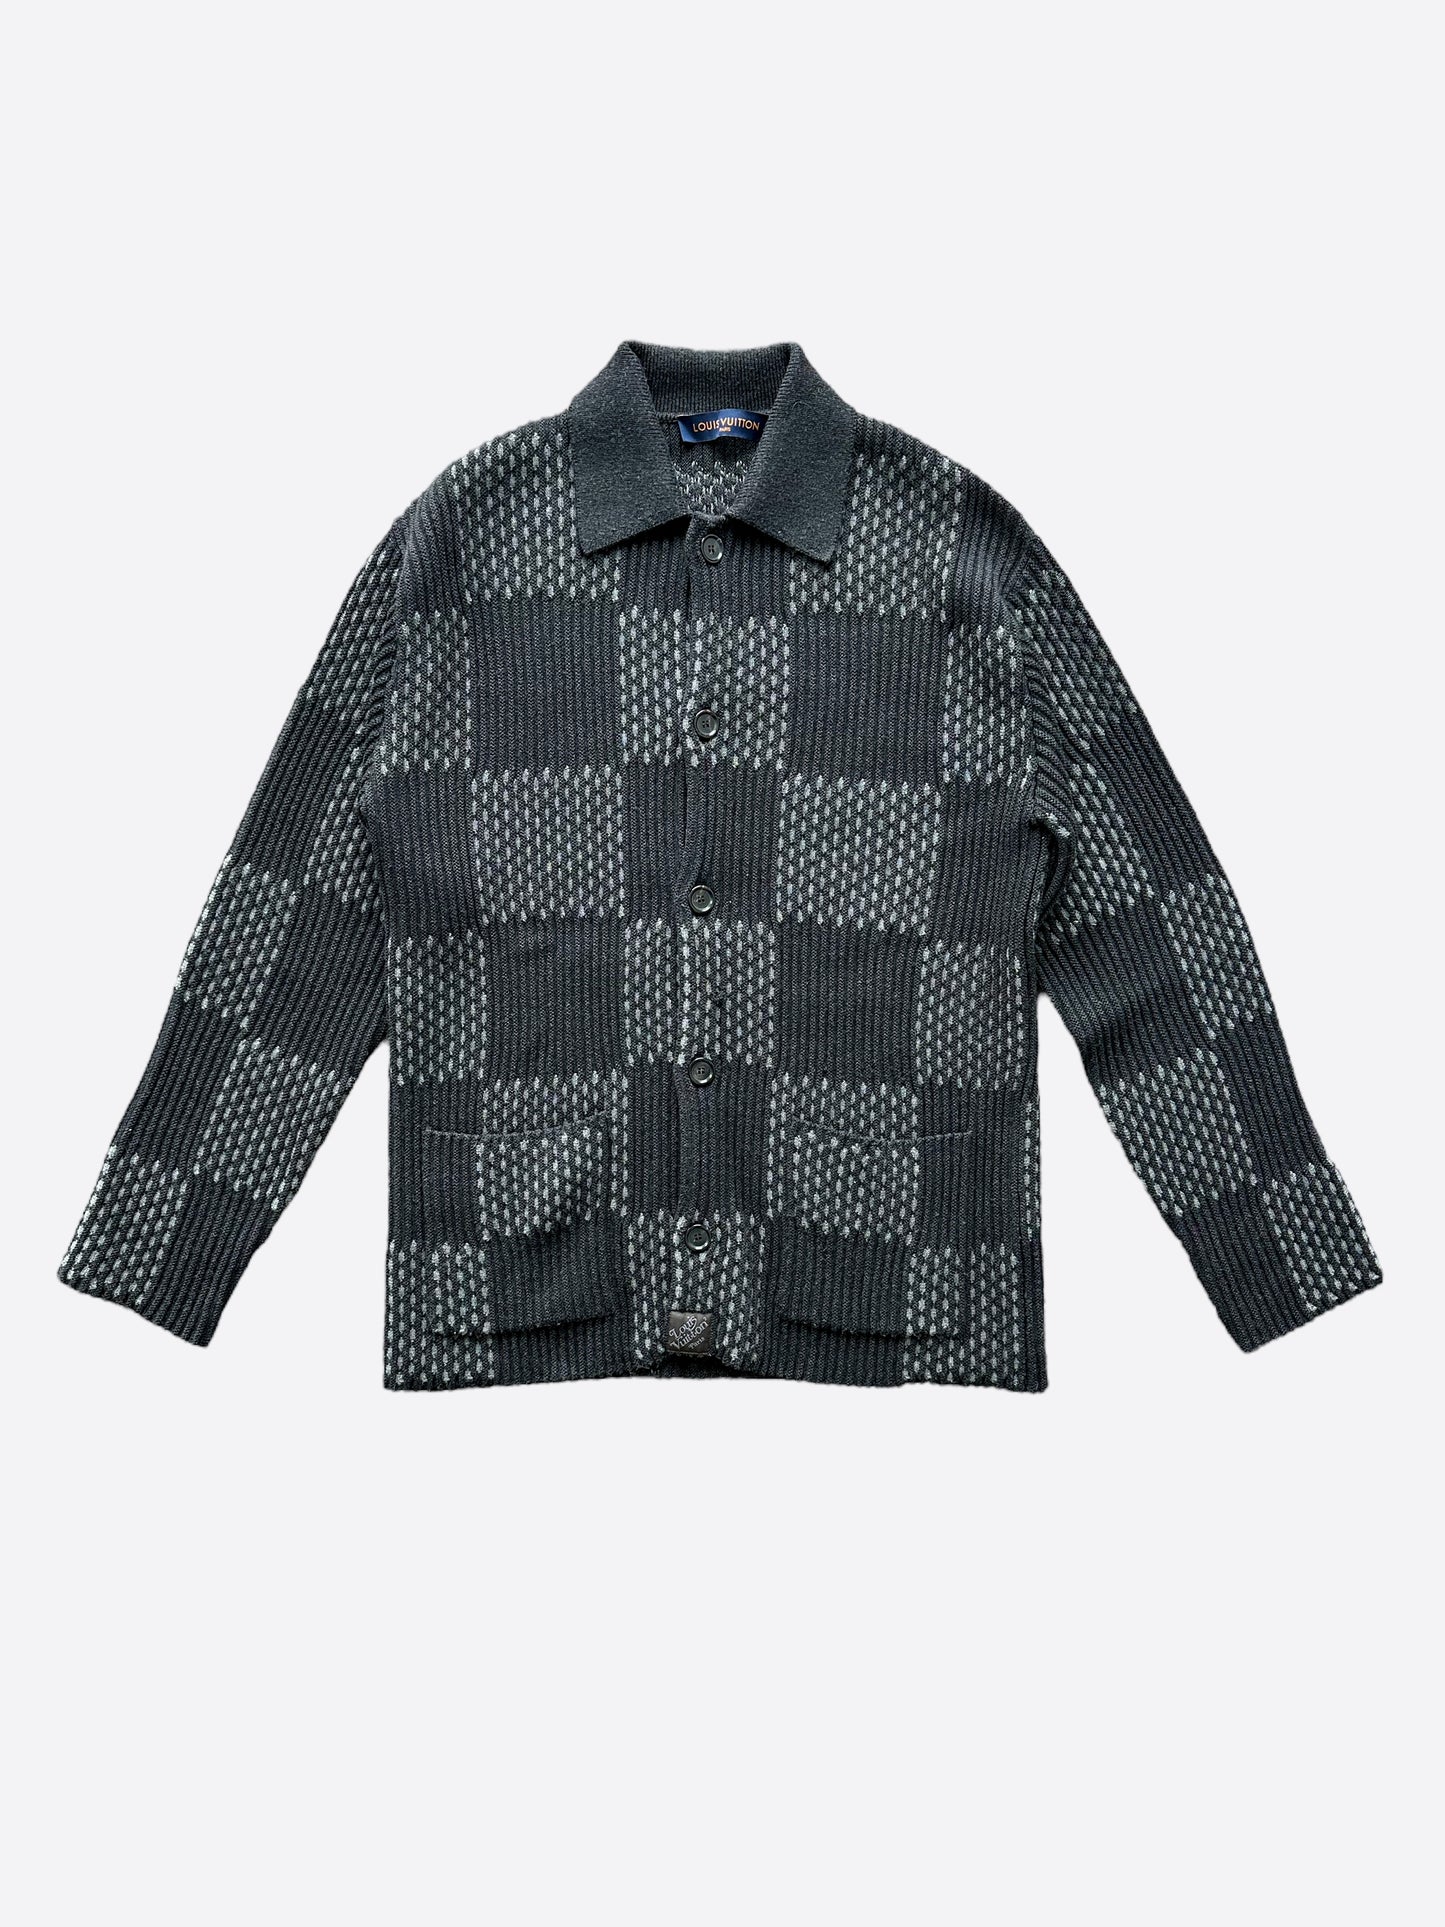 Louis Vuitton Black & Blue Half Monogram Cashmere Sweater – Savonches